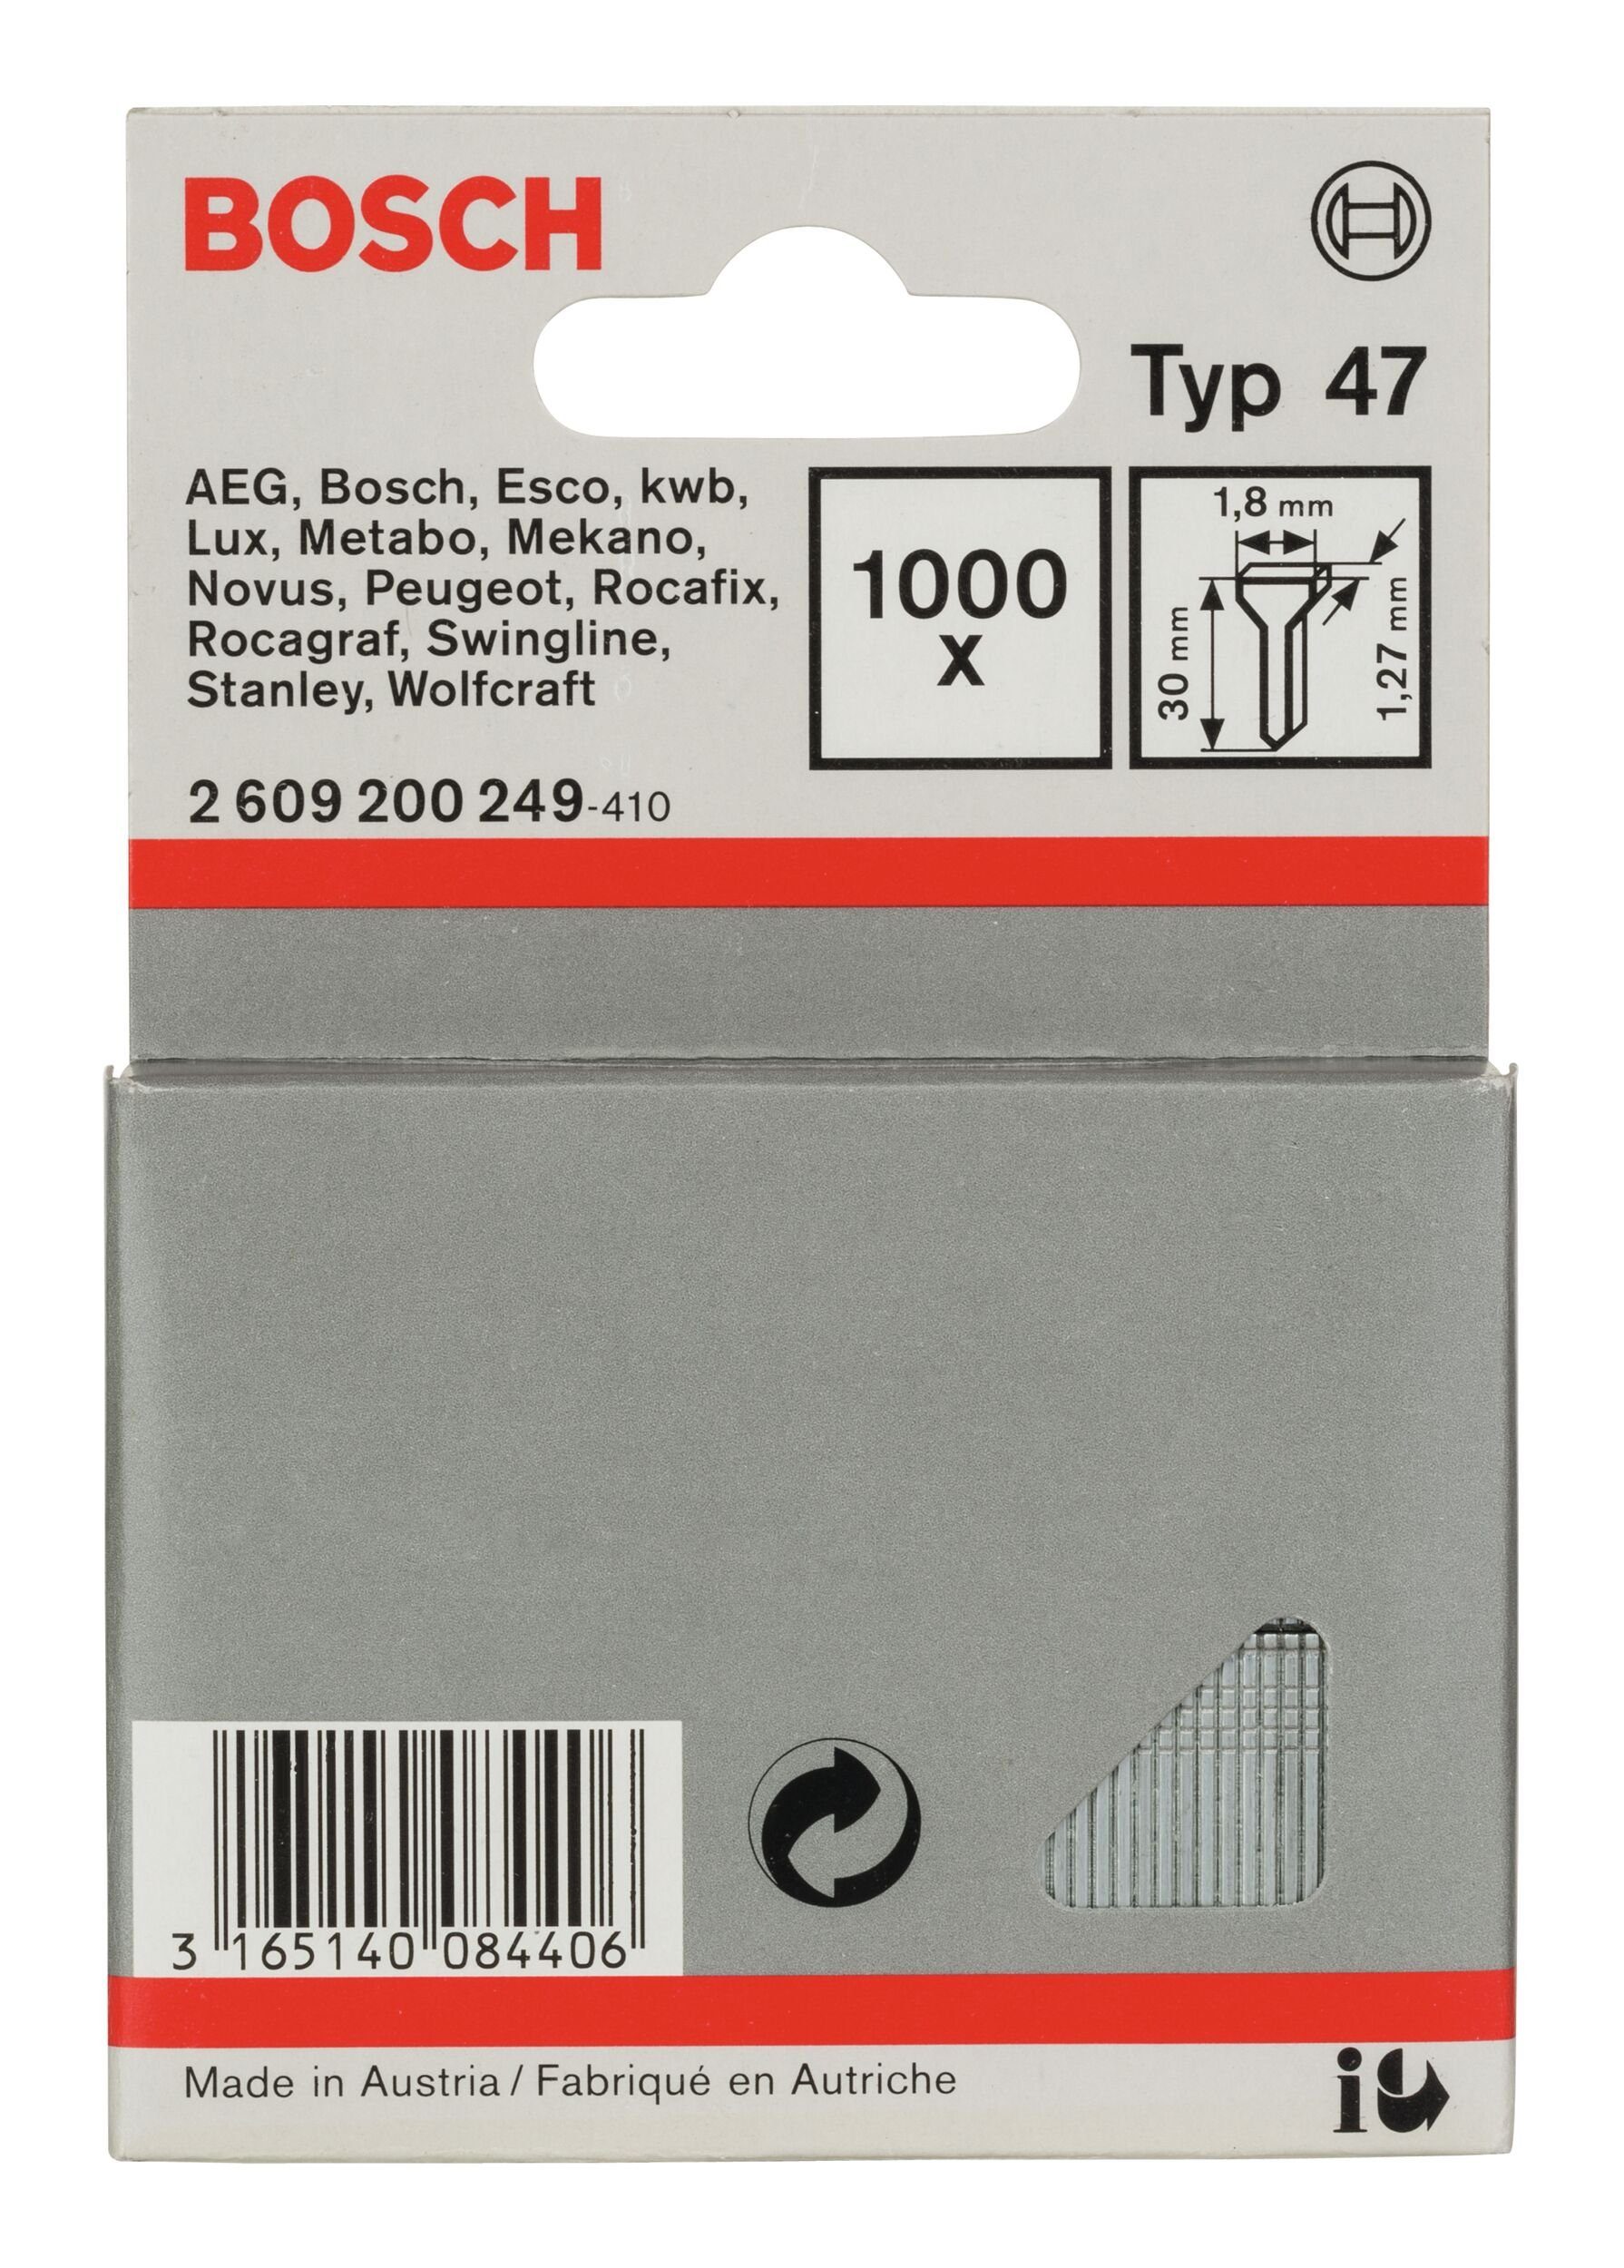 Bosch Accessories BOSCH Tackerklammer, Typ 47 Tackernagel - 1,27 x 30 x 1,8 mm - 1000er-Pack